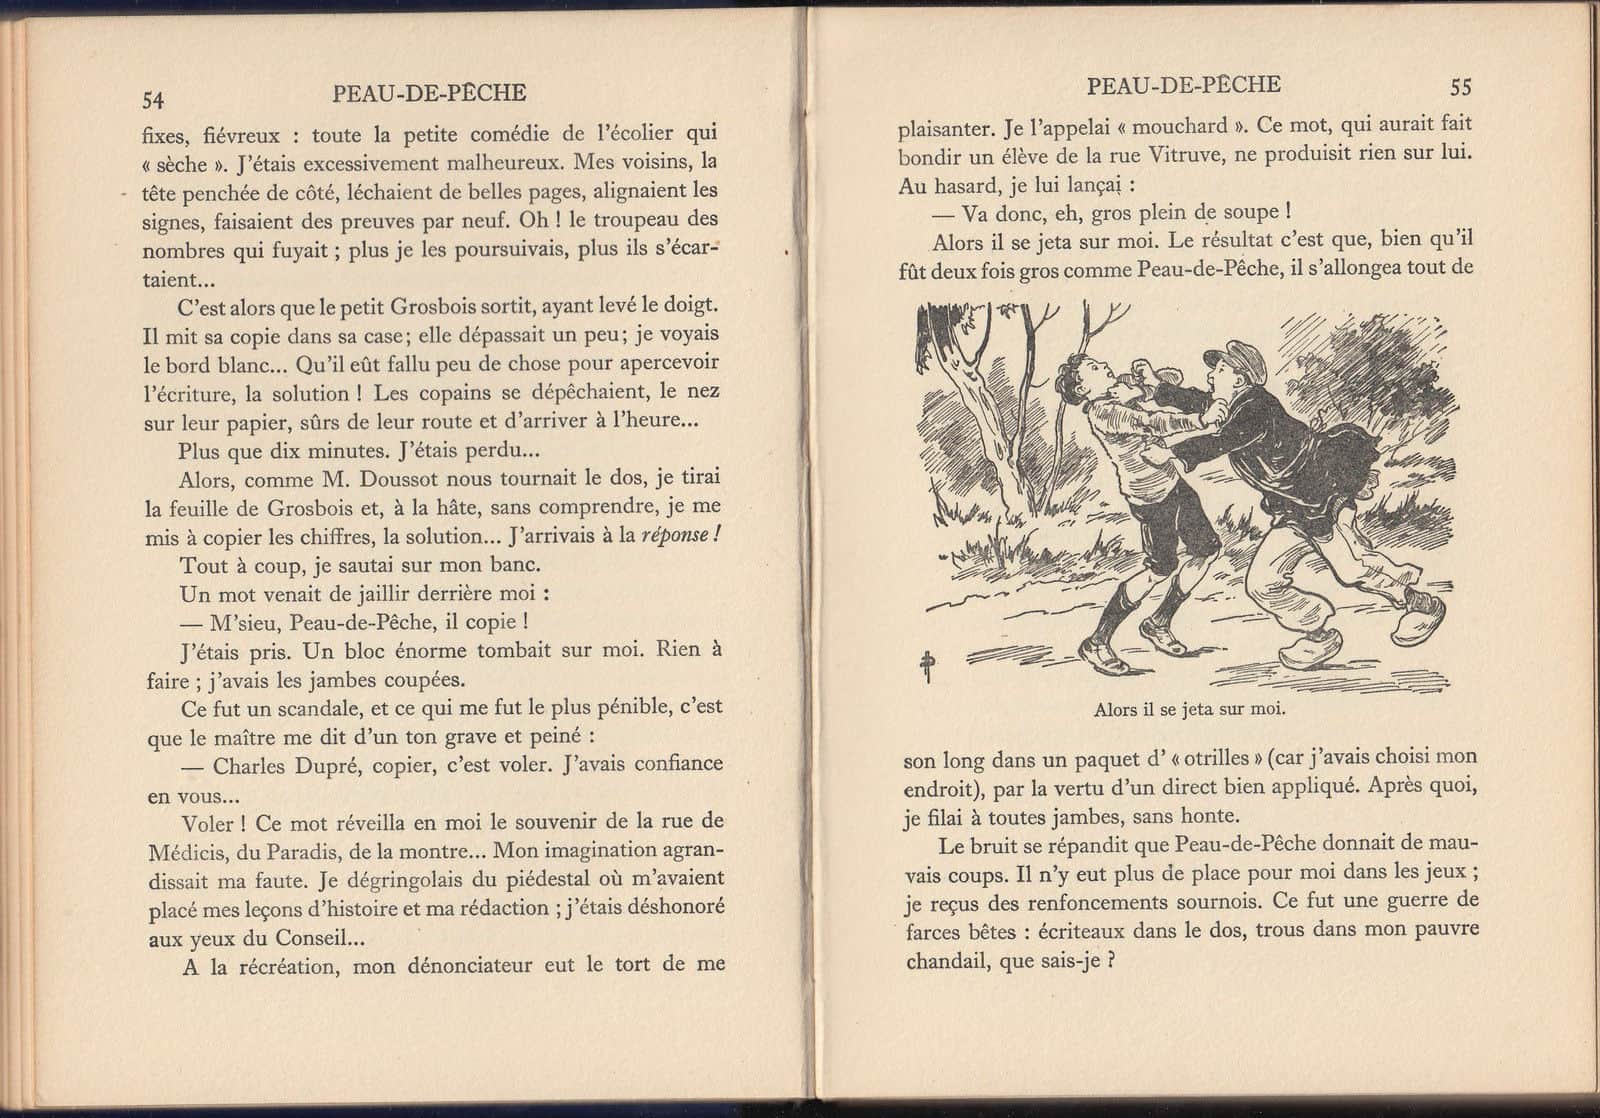  Les hasards de la route (French Edition